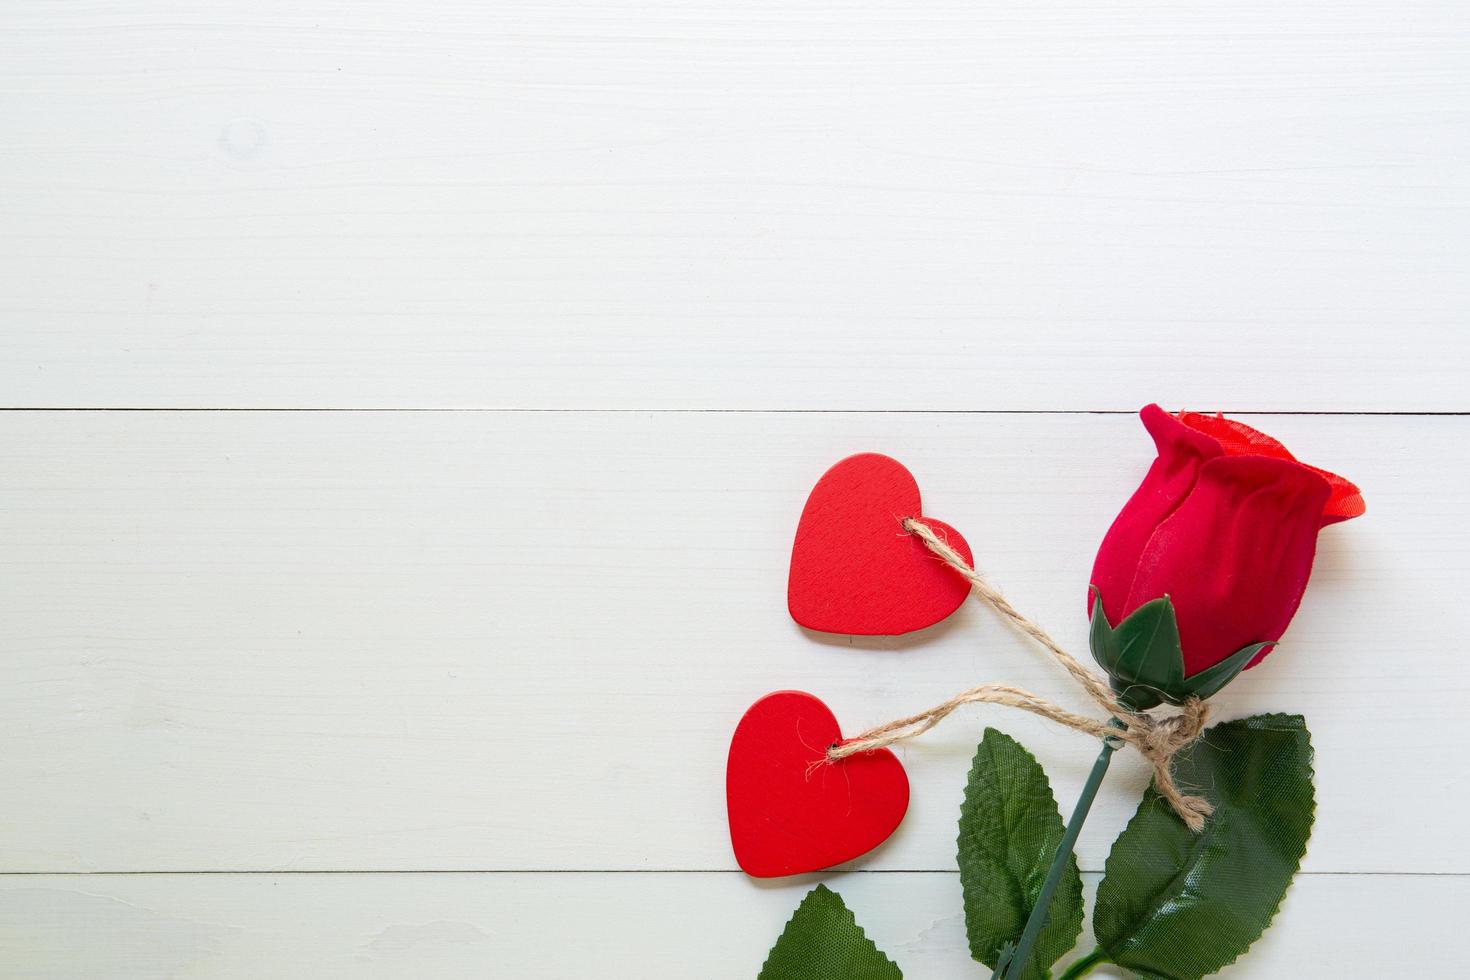 geschenk mit roter rosenblume und herzform auf holztisch, 14. februar des liebestags mit romantischem kopienraum, valentinstag-feiertagskonzept, draufsicht. foto